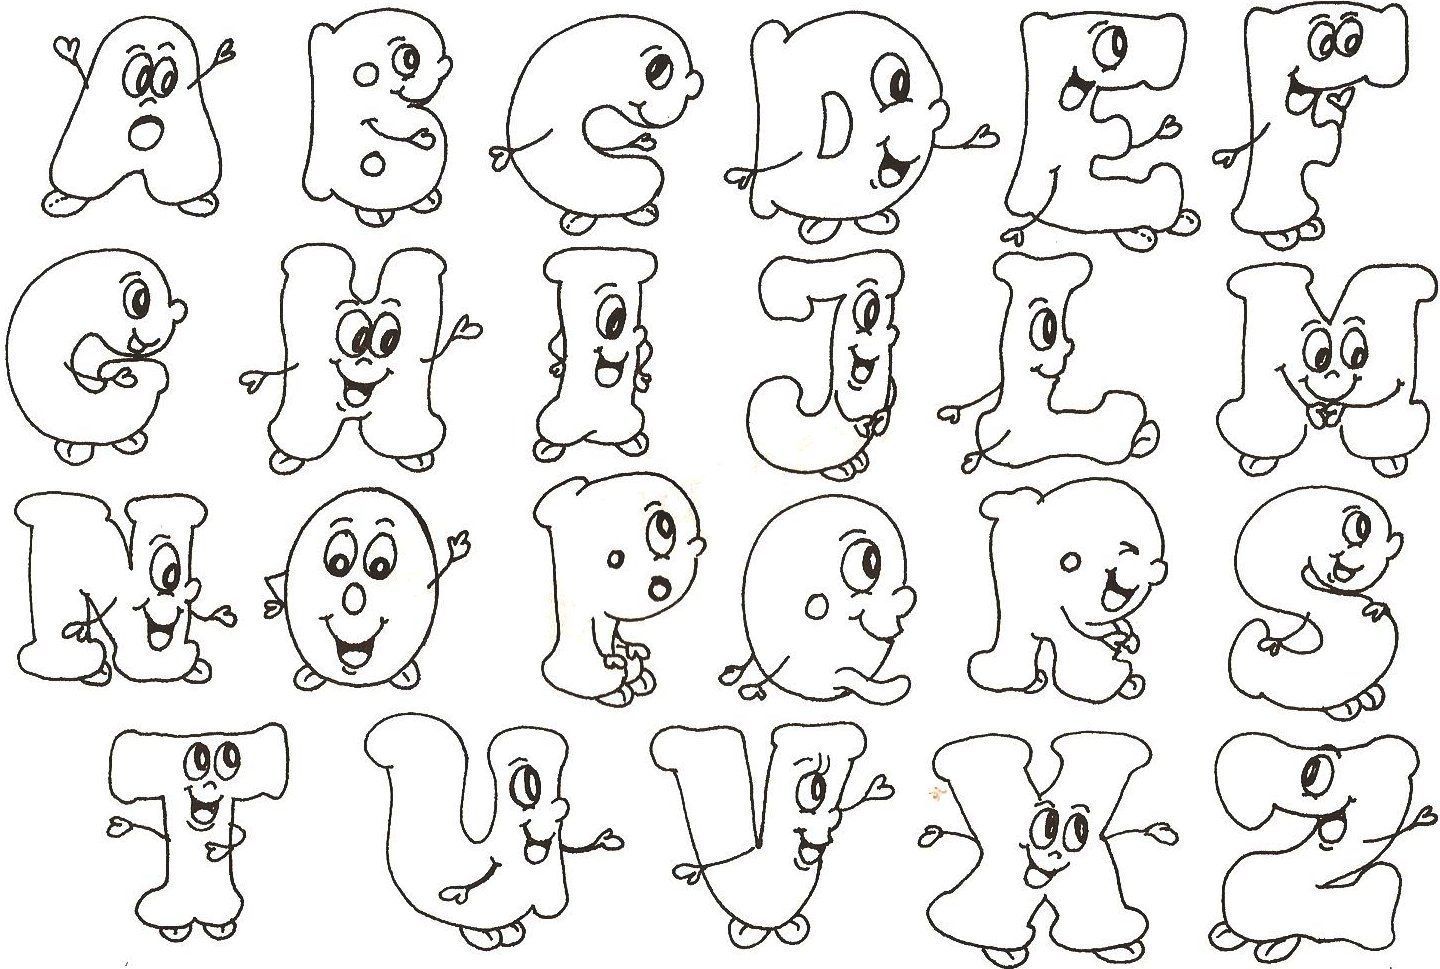 английский алфавит раскраска для детей в картинках распечатать